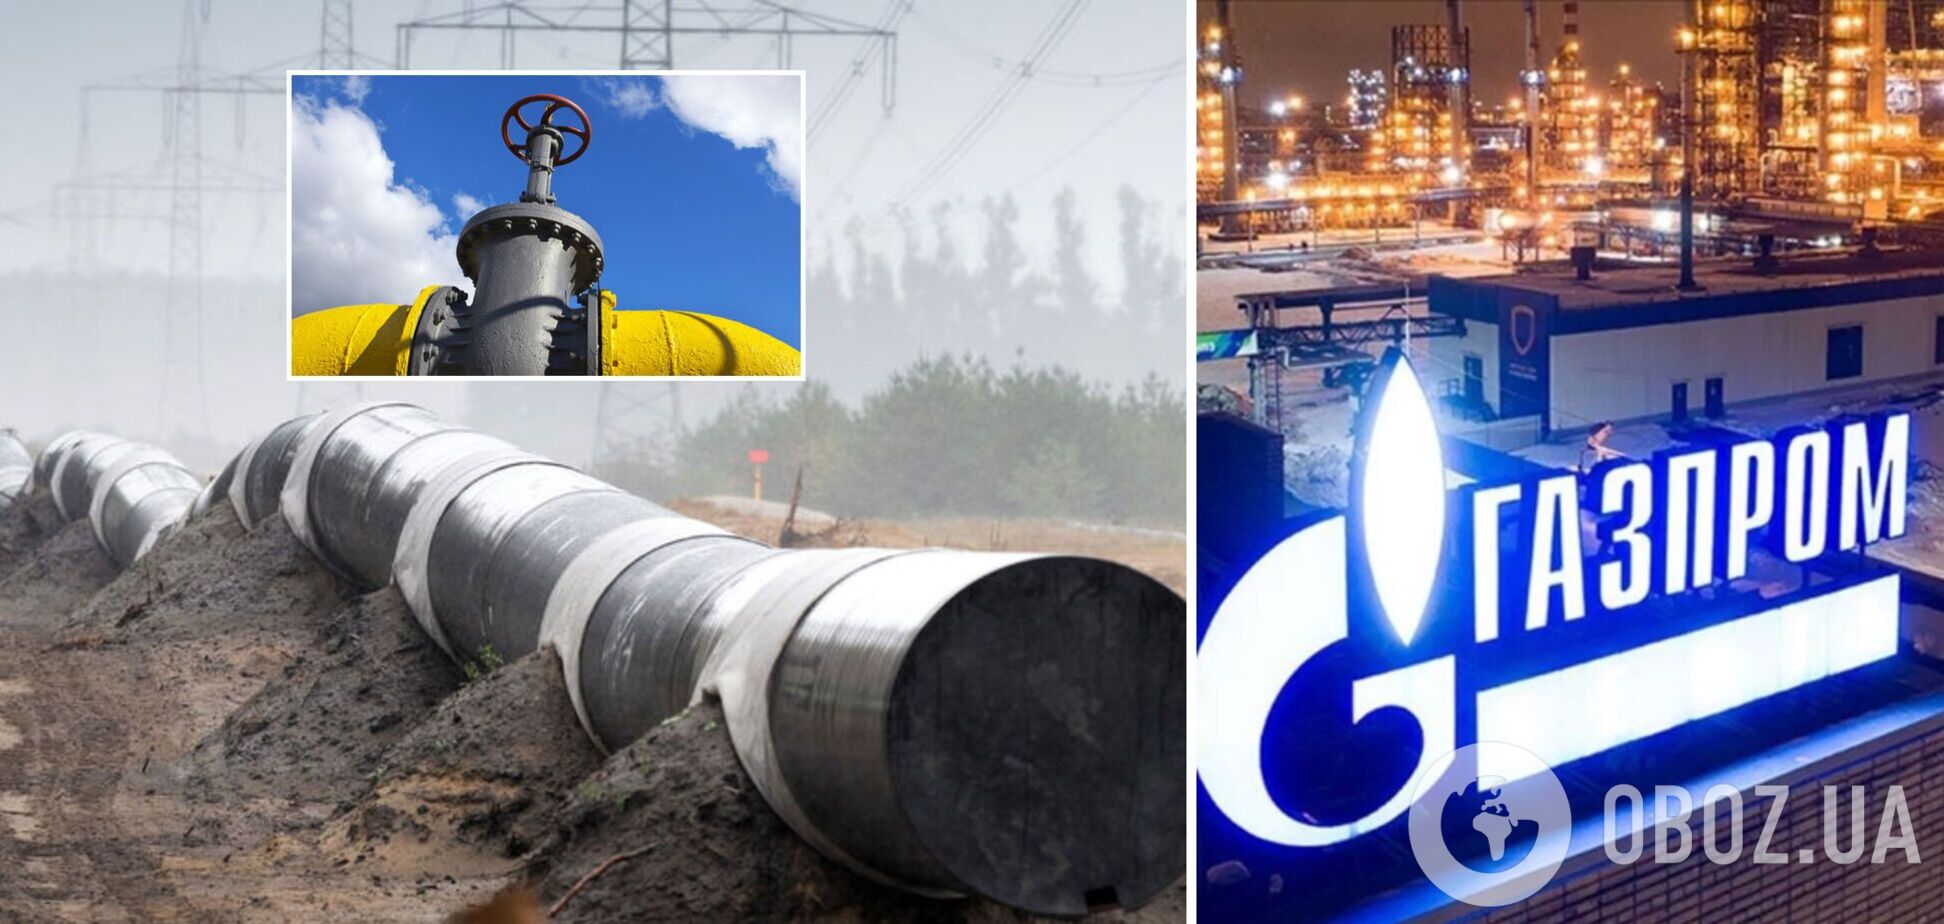 Акции 'Газпрома' резко подорожали, благодаря 'Северному потоку-2' 